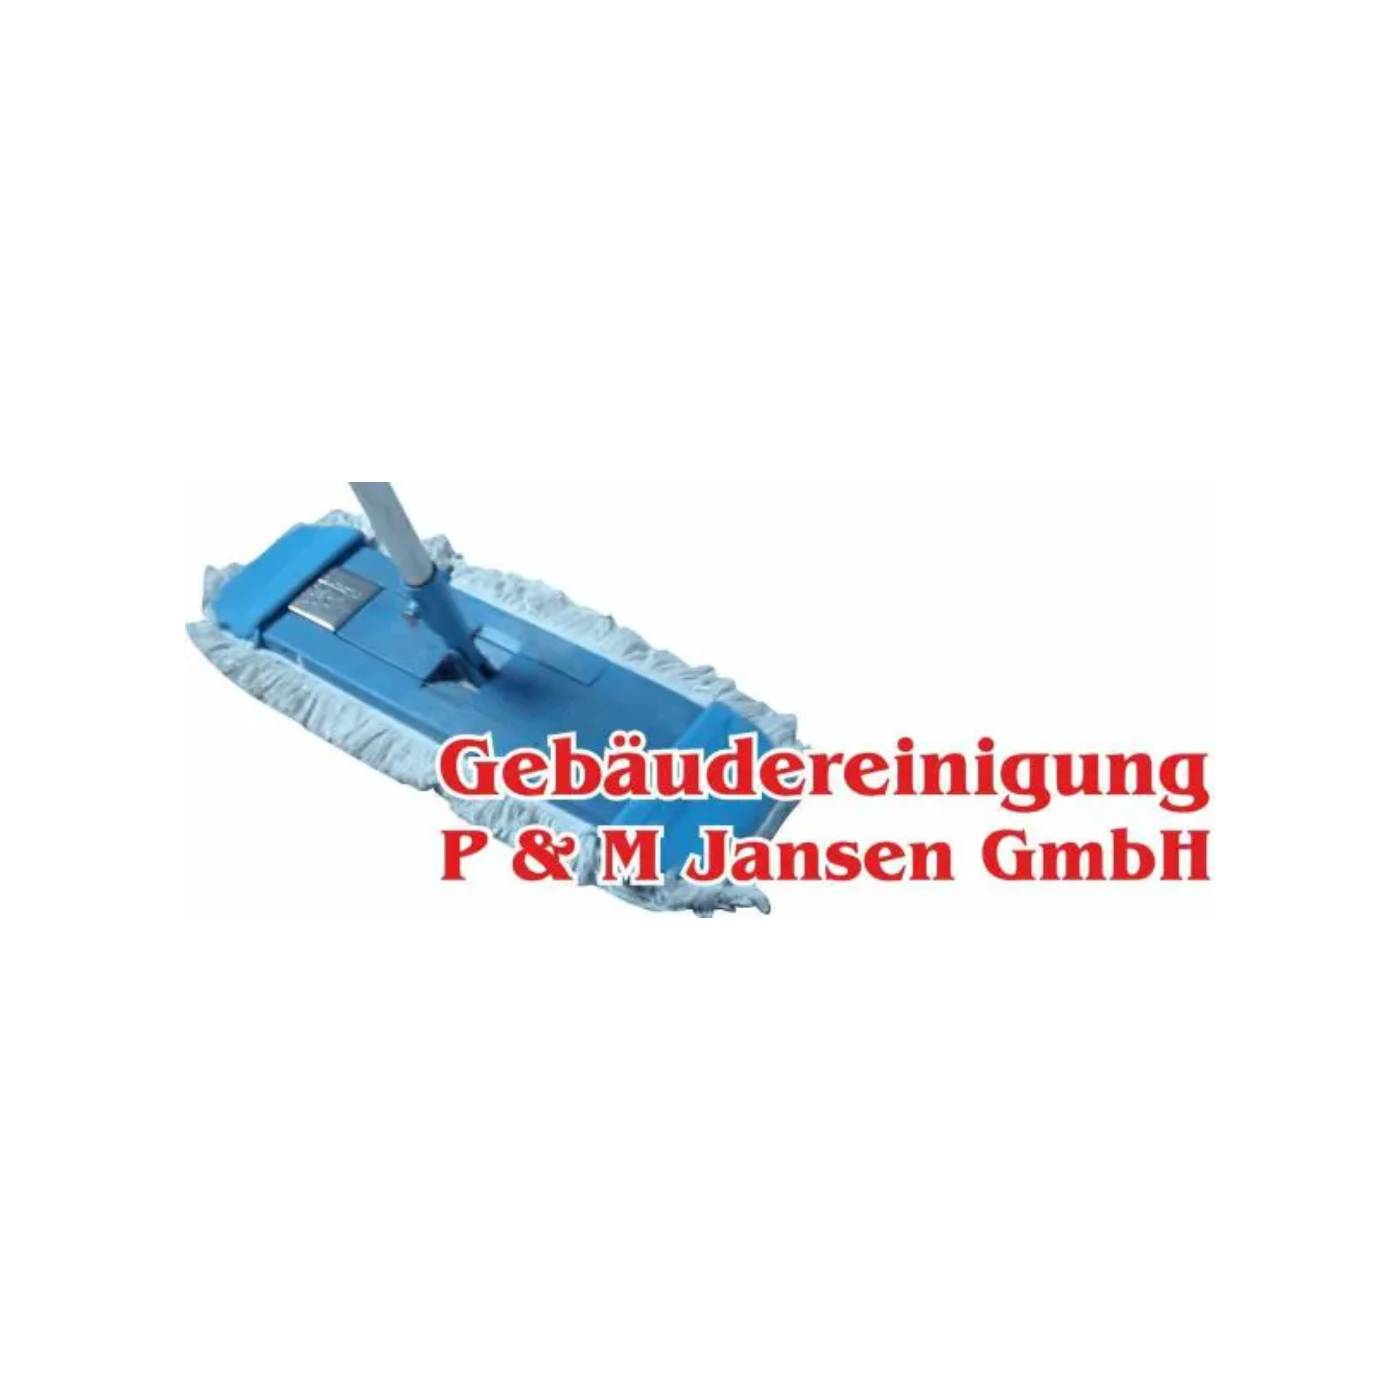 Gebäudereinigung P&M Jansen GmbH - Mönchengladbach logo